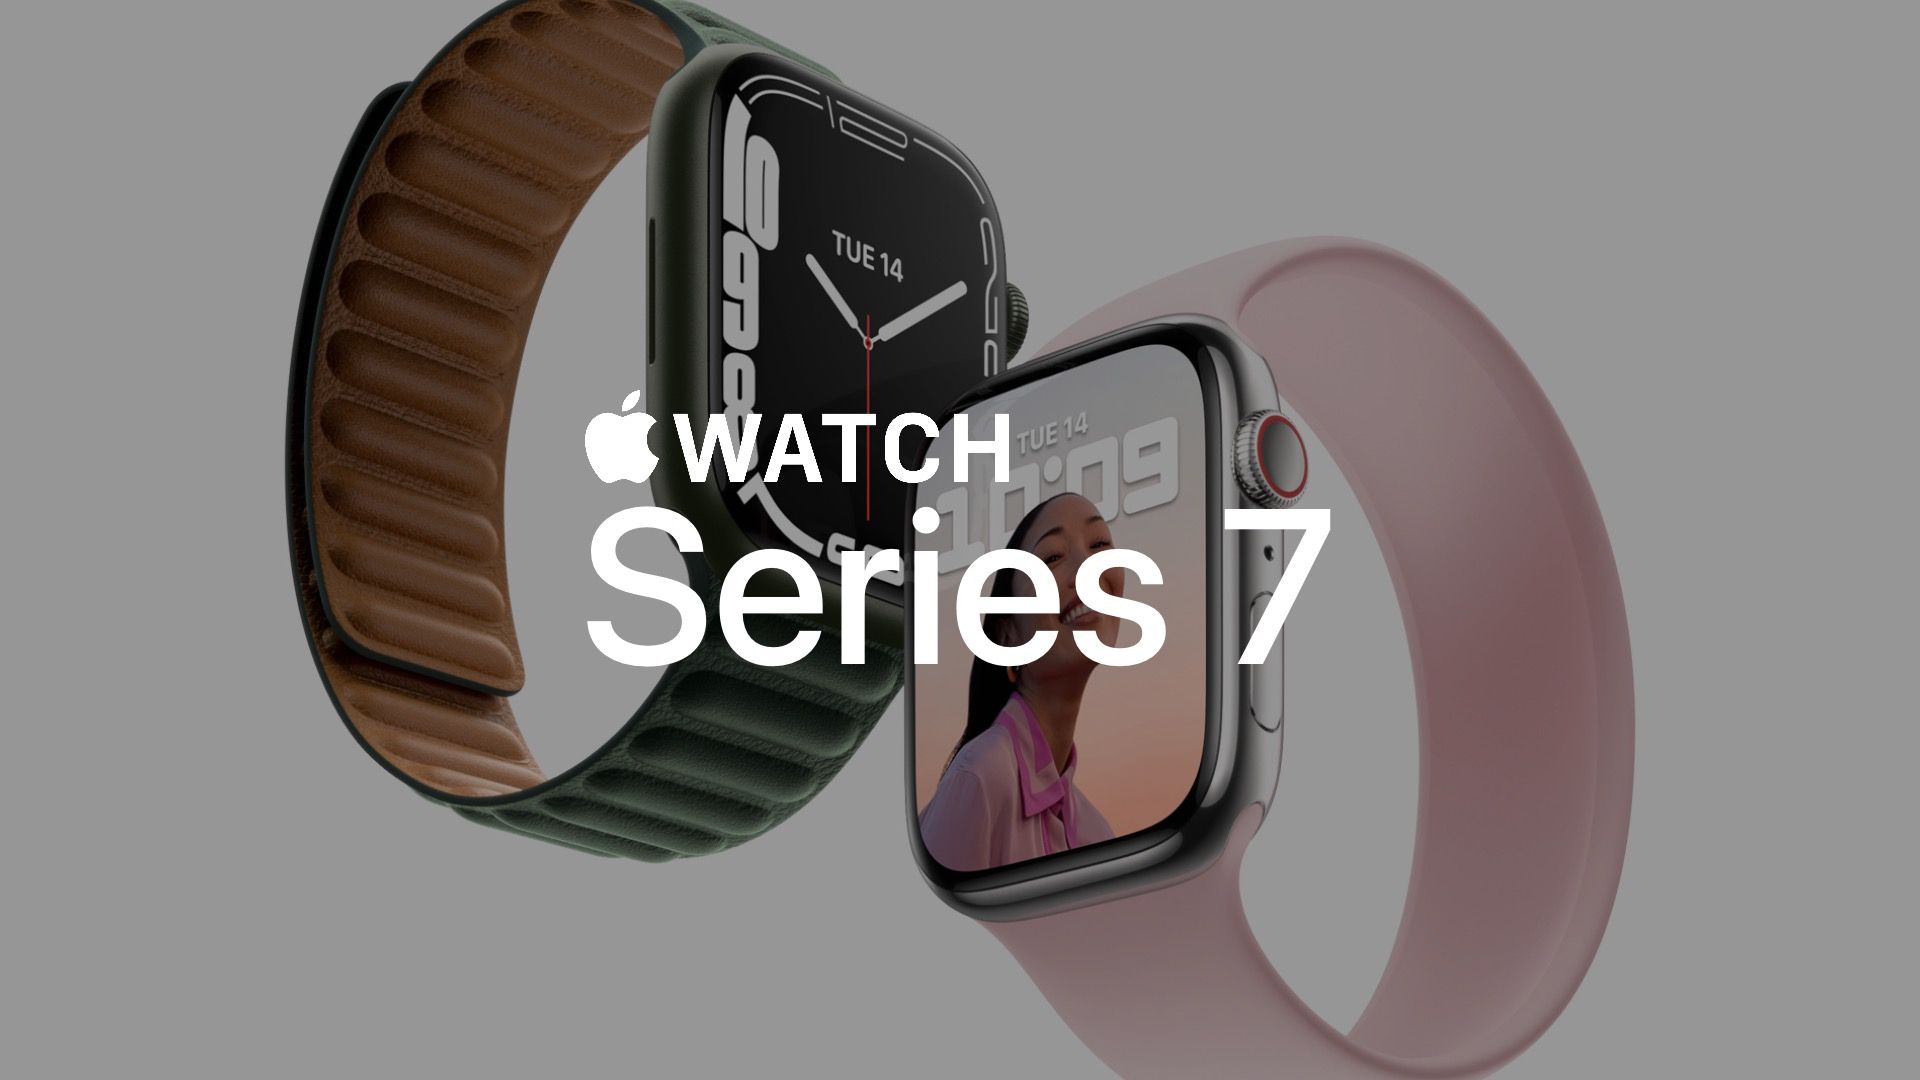 Mais um passo importante para o Apple Watch. Chegou o Series 7!